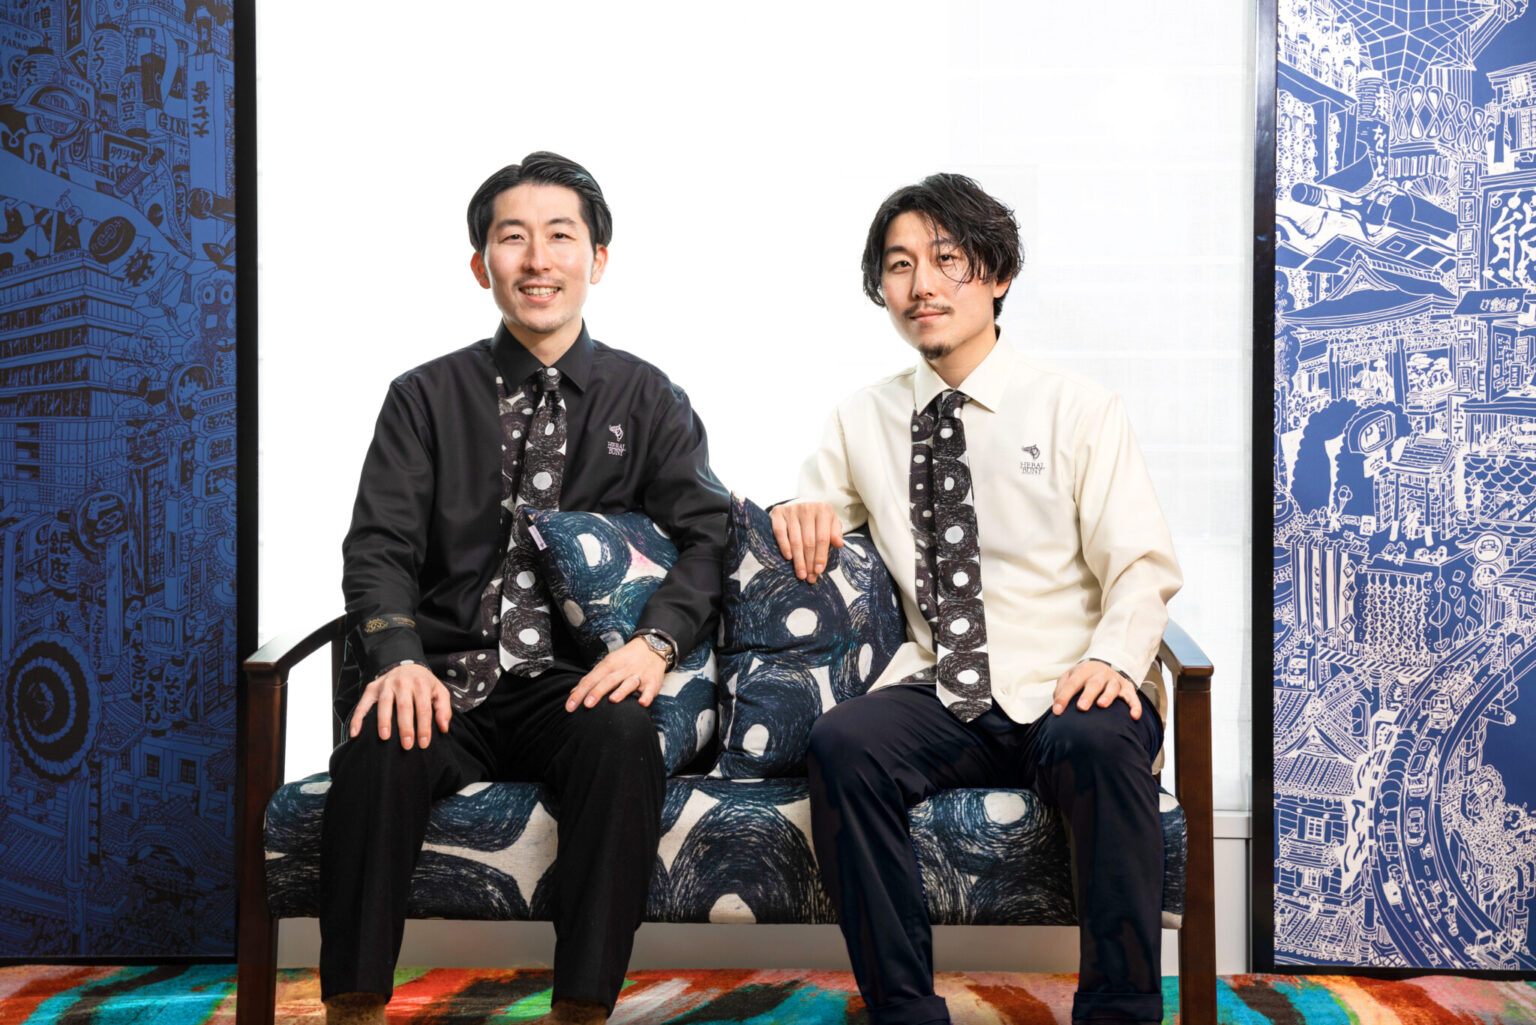 双子の兄弟で会社を営む、ヘラルボニー代表取締役の松田崇弥さん（写真右）、取締役副社長の松田文登さん（写真左）。